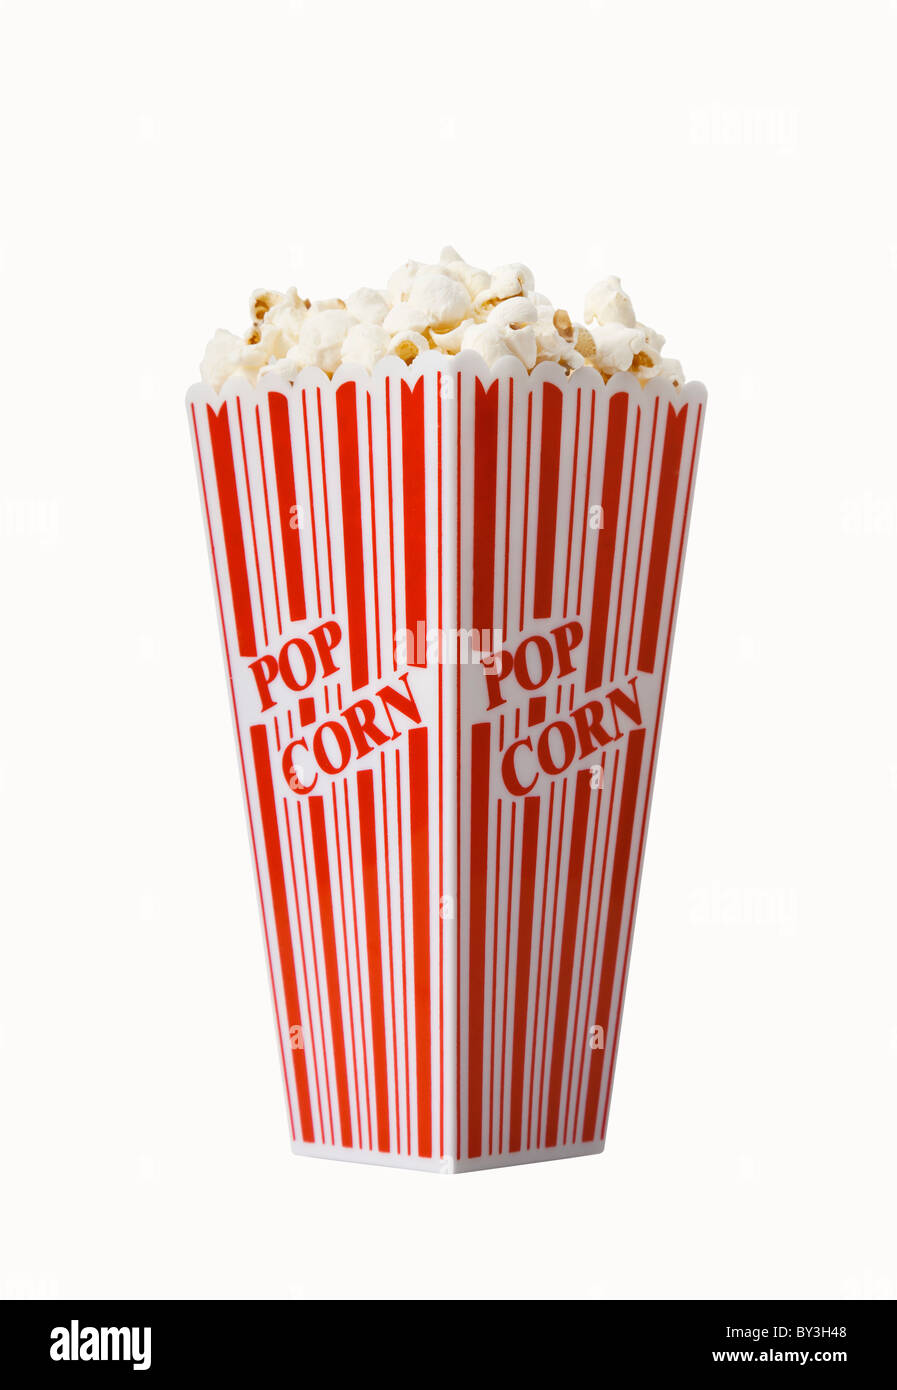 Box of fresh popcorn isolated on white background Stock Photo